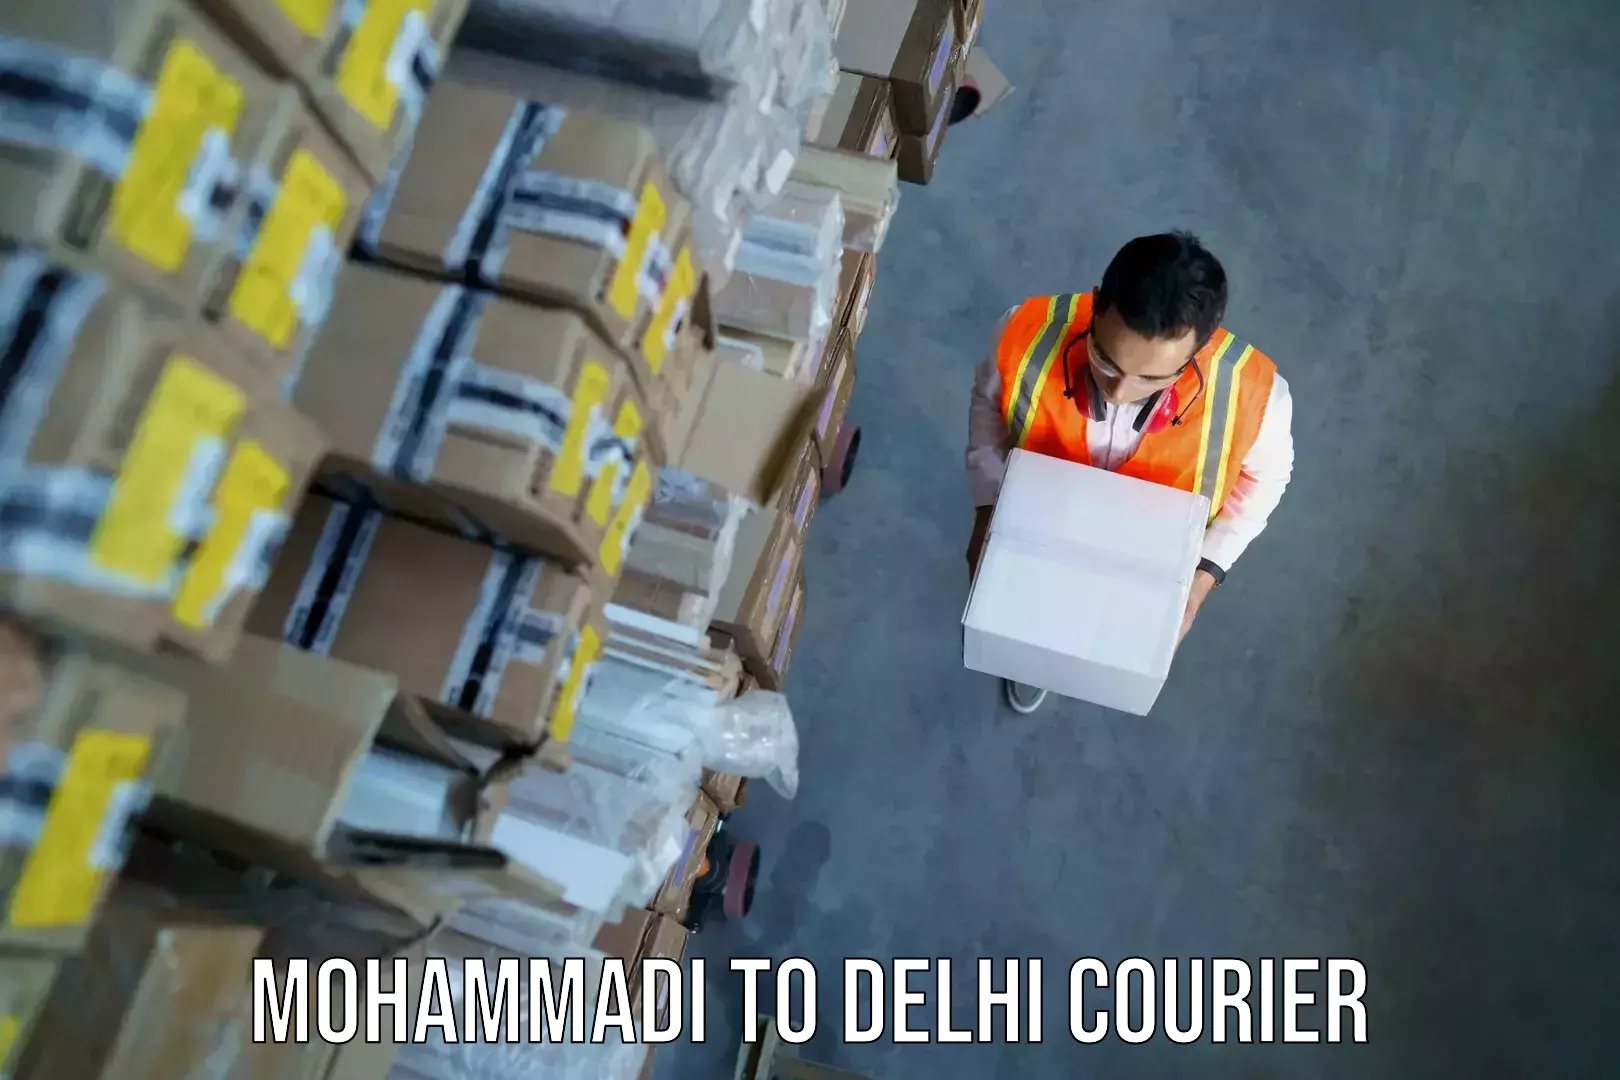 Baggage transport innovation Mohammadi to IIT Delhi